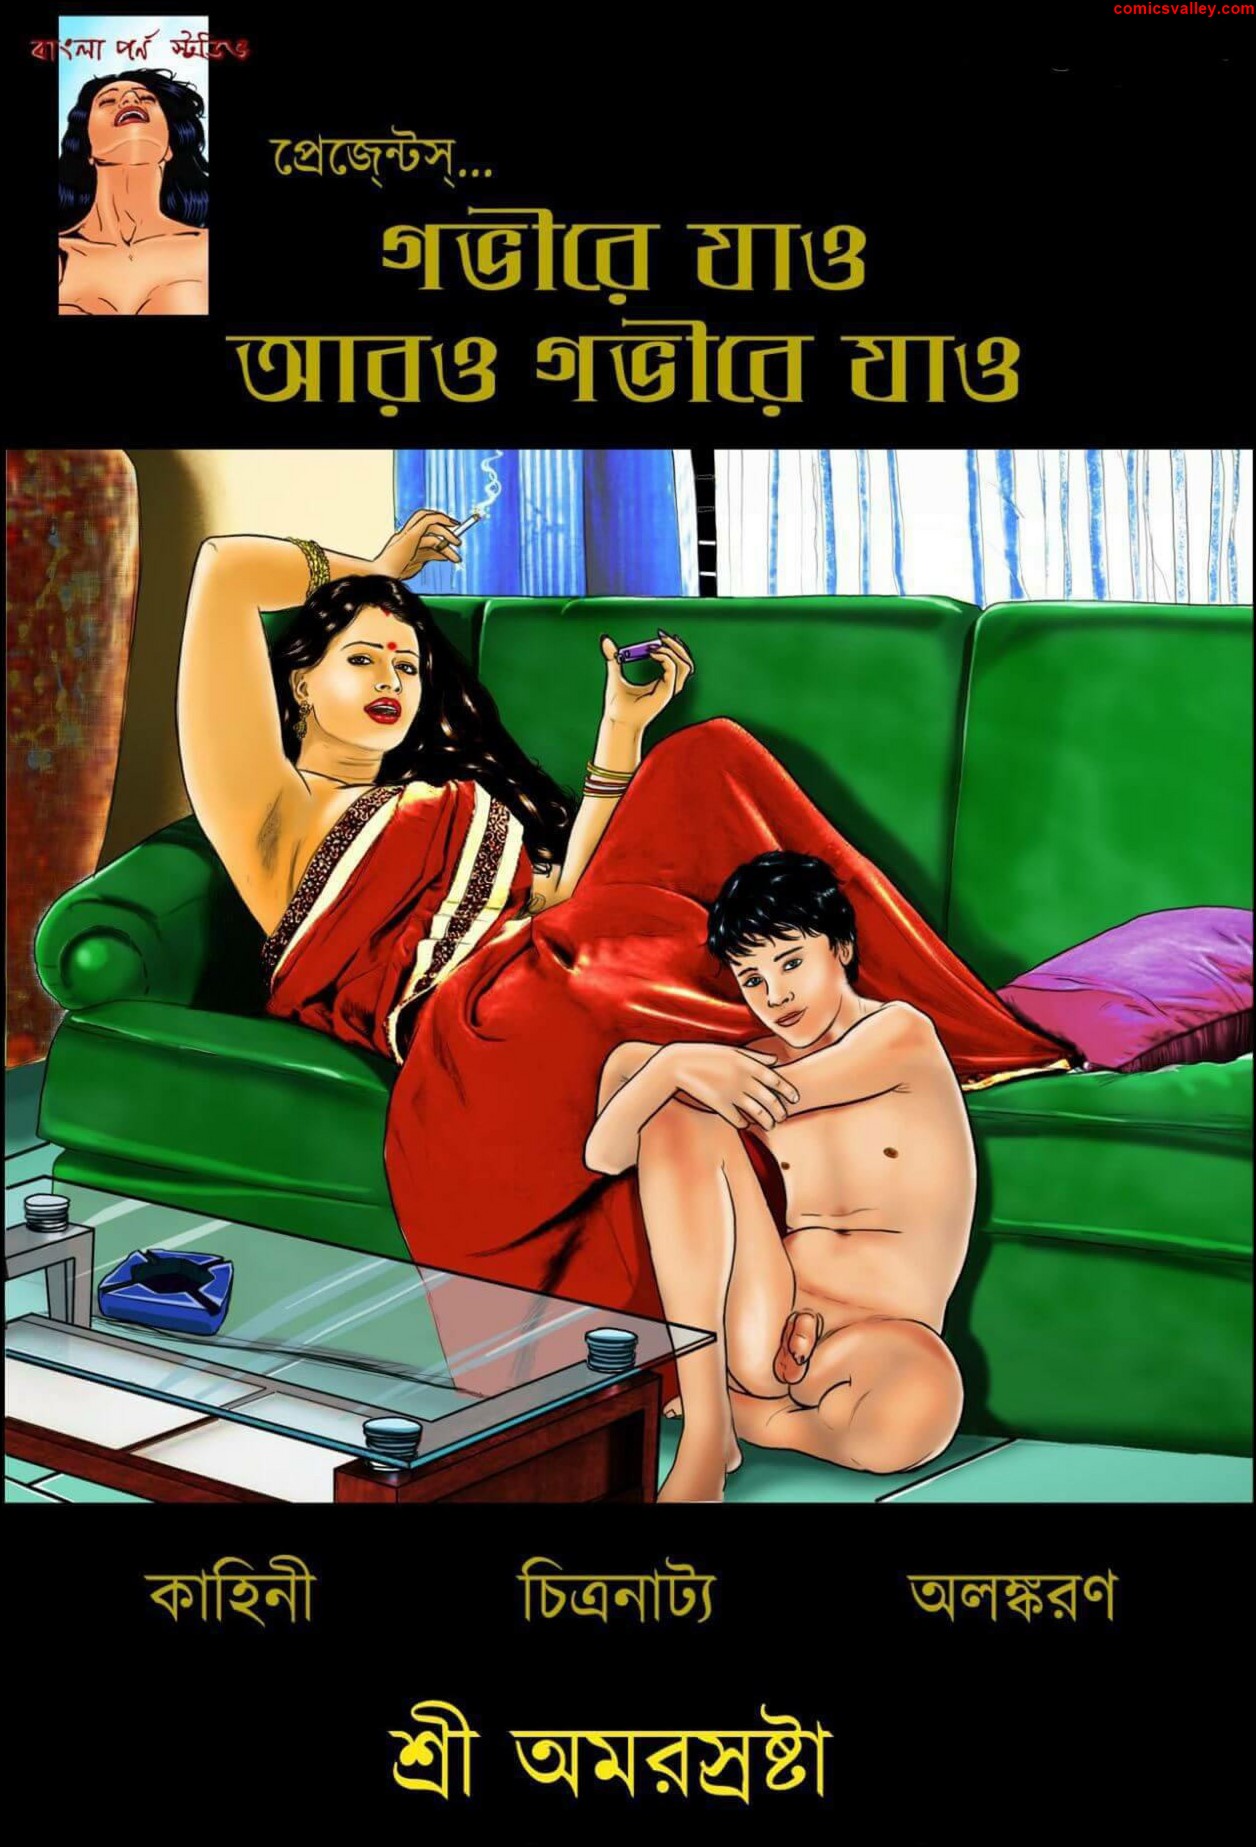 Porn bangla story